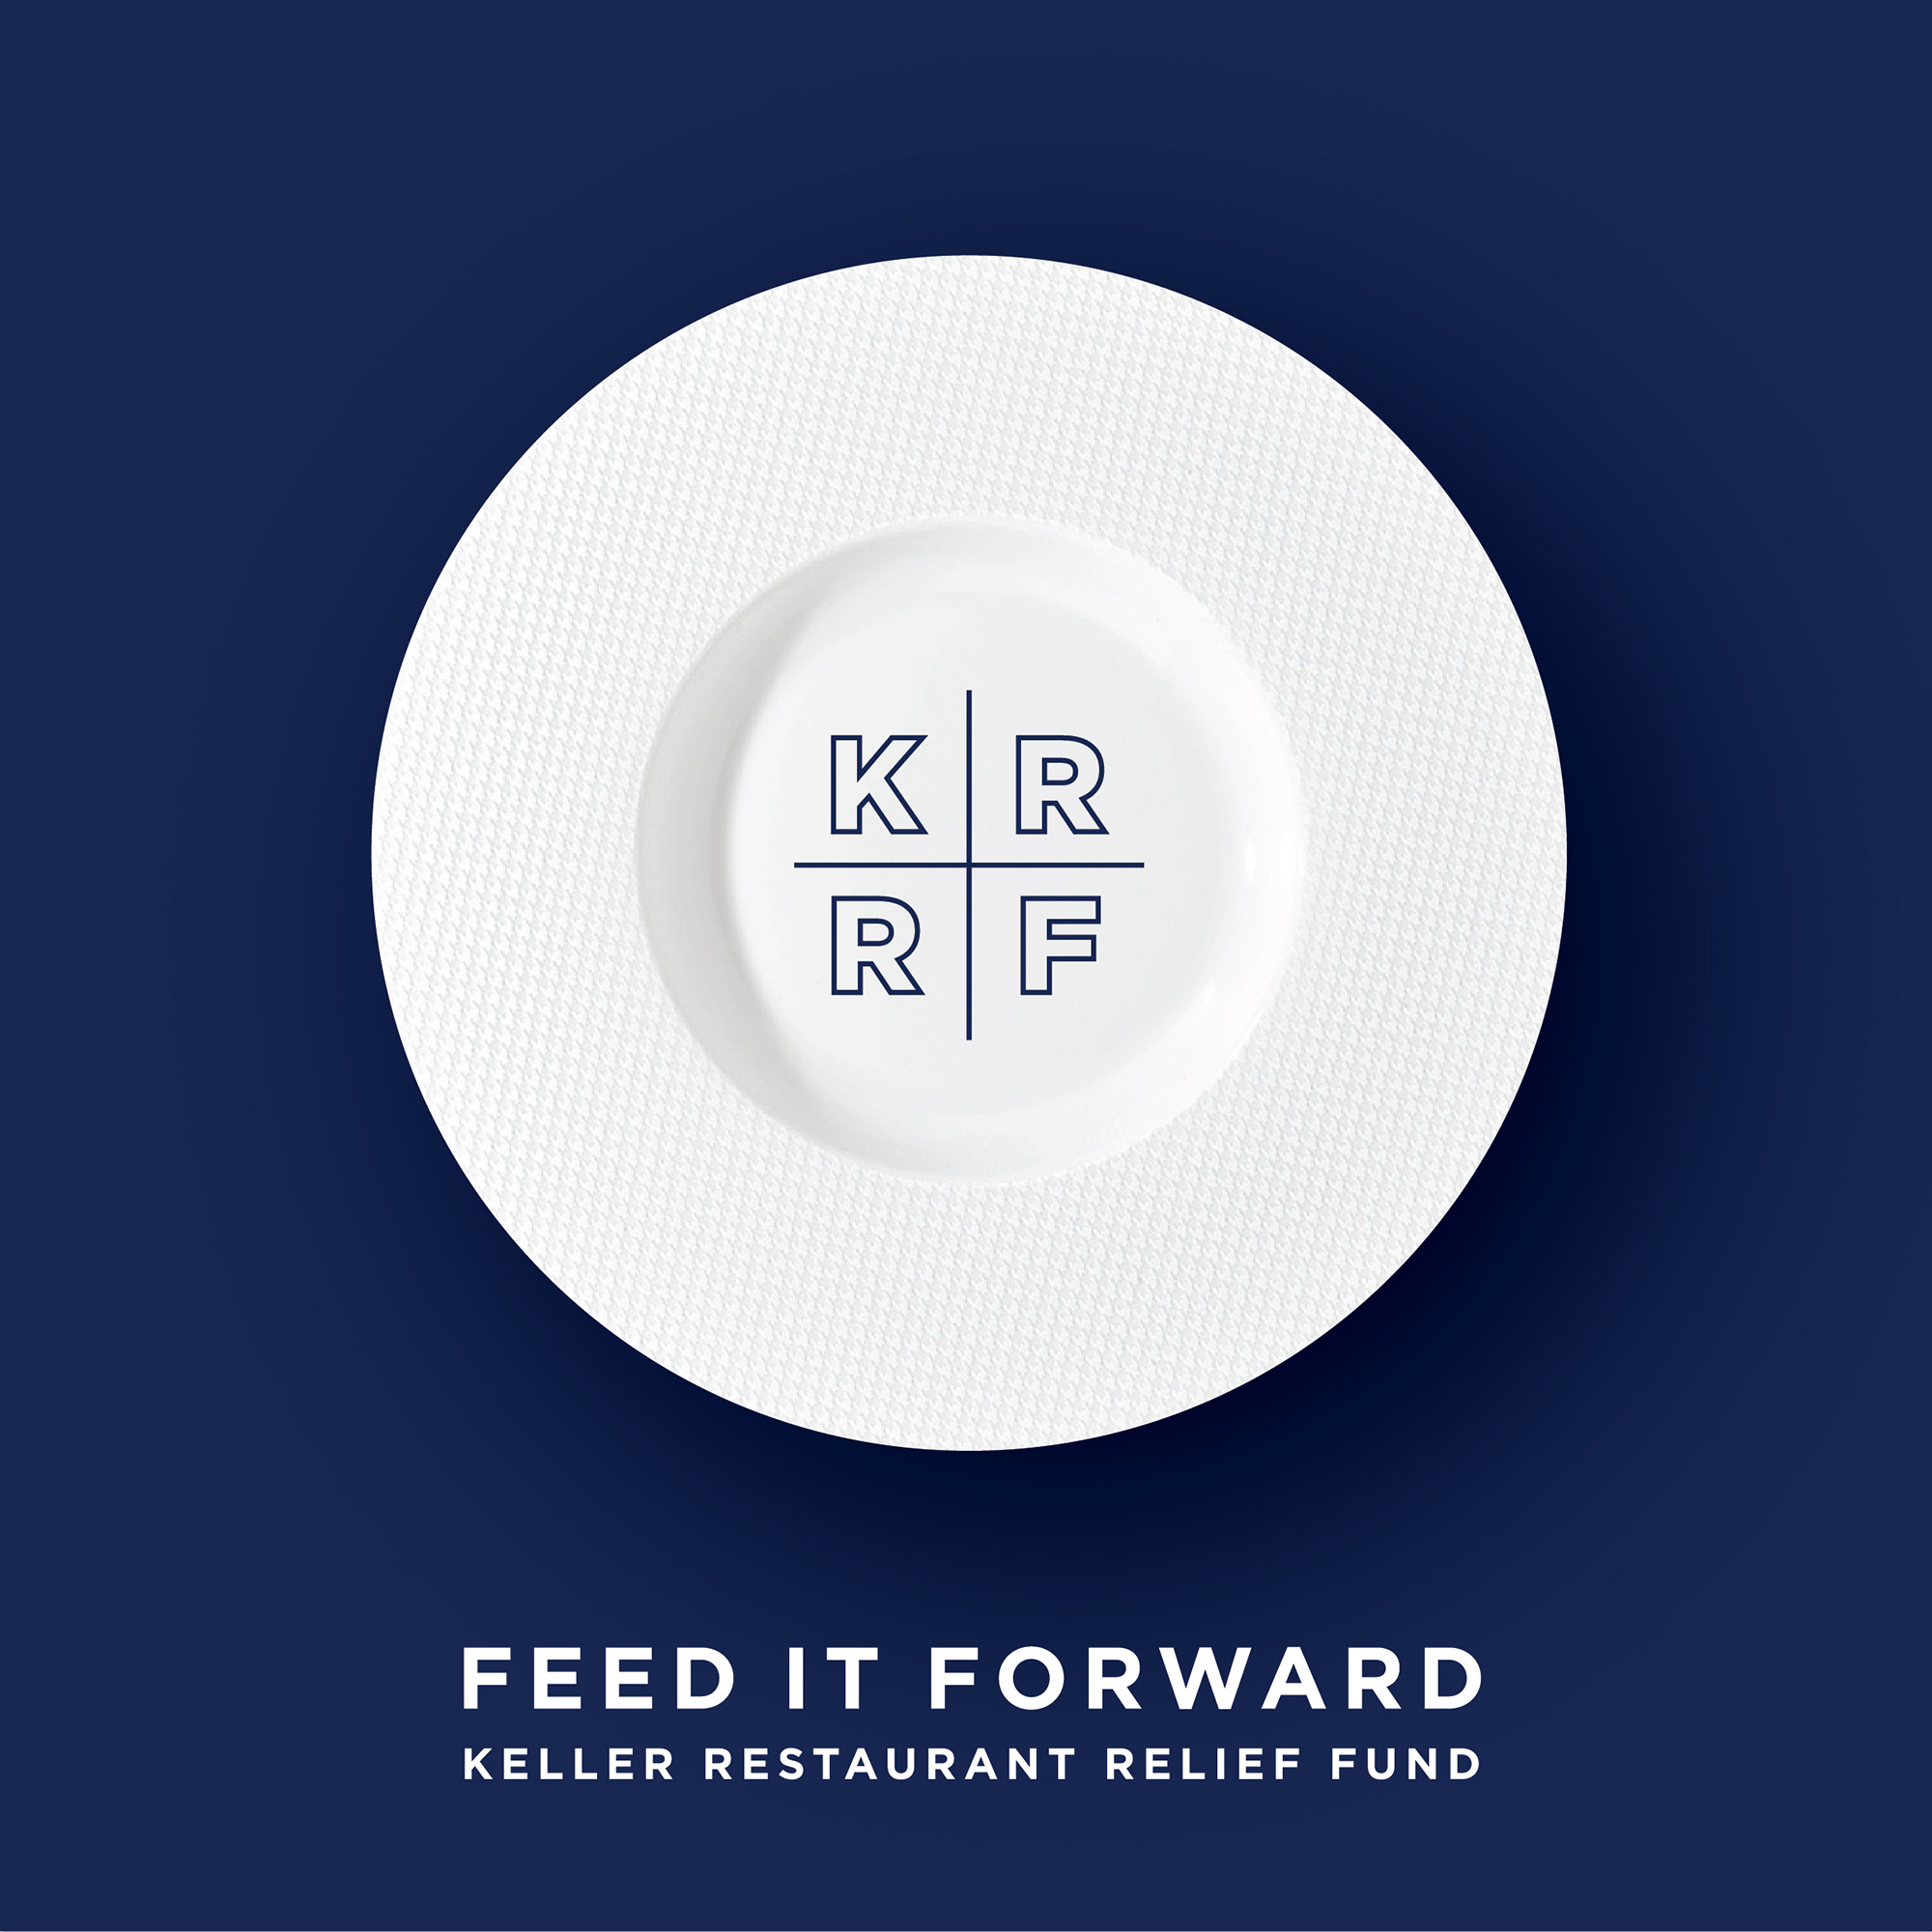 Keller Restaurant Relief Fund logo